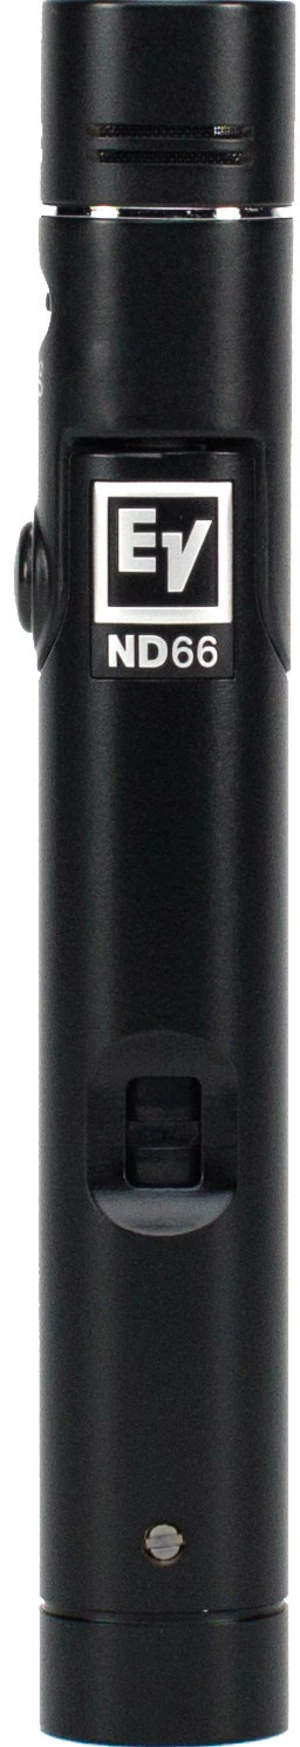 Electro Voice ND66 Microphone à condensateur pour instruments